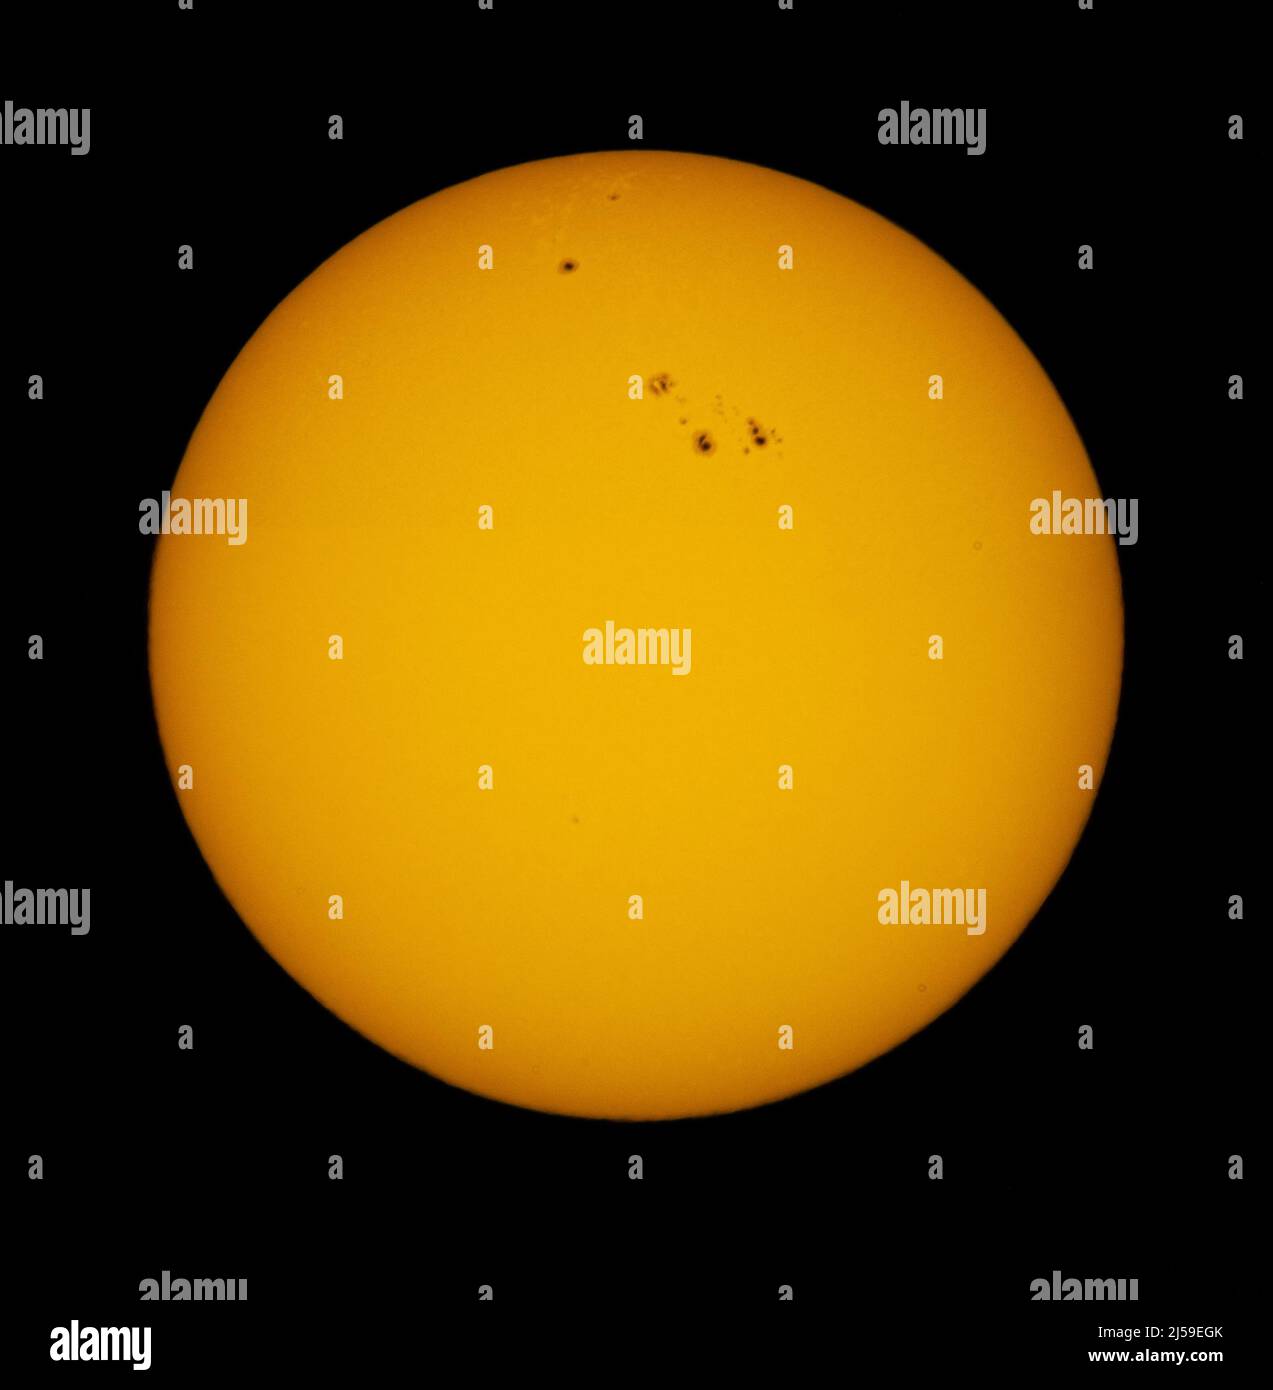 Neue Sonnenflecken, die groß genug sind, um den Erdeinlauf in den Sonnenzyklus 25 zu verschlingen. Zwei große Sonnenfleckgruppen, die als AR 229 und AR 2994 bekannt sind, wurden vor einigen Tagen am nordöstlichen Rand der Sonne sichtbar, mit einer erhöhten Möglichkeit von lebhaften Auroren und potenziell schädlichen Sonneneruptionen in den kommenden Monaten. Die Sonnenflecken sind groß genug, dass sie die ganze Erde verschlucken könnten. Die Flecken werden durch magnetische Störungen der sichtbaren Photosphäre der Sonne verursacht, die die kühleren Schichten darunter freilegt. Jetzt begann der Sonnenzyklus 25, der Sonnenzyklus 1 im Jahr 1775, als Astronomen erstmals den Aufnahmen Stockfoto